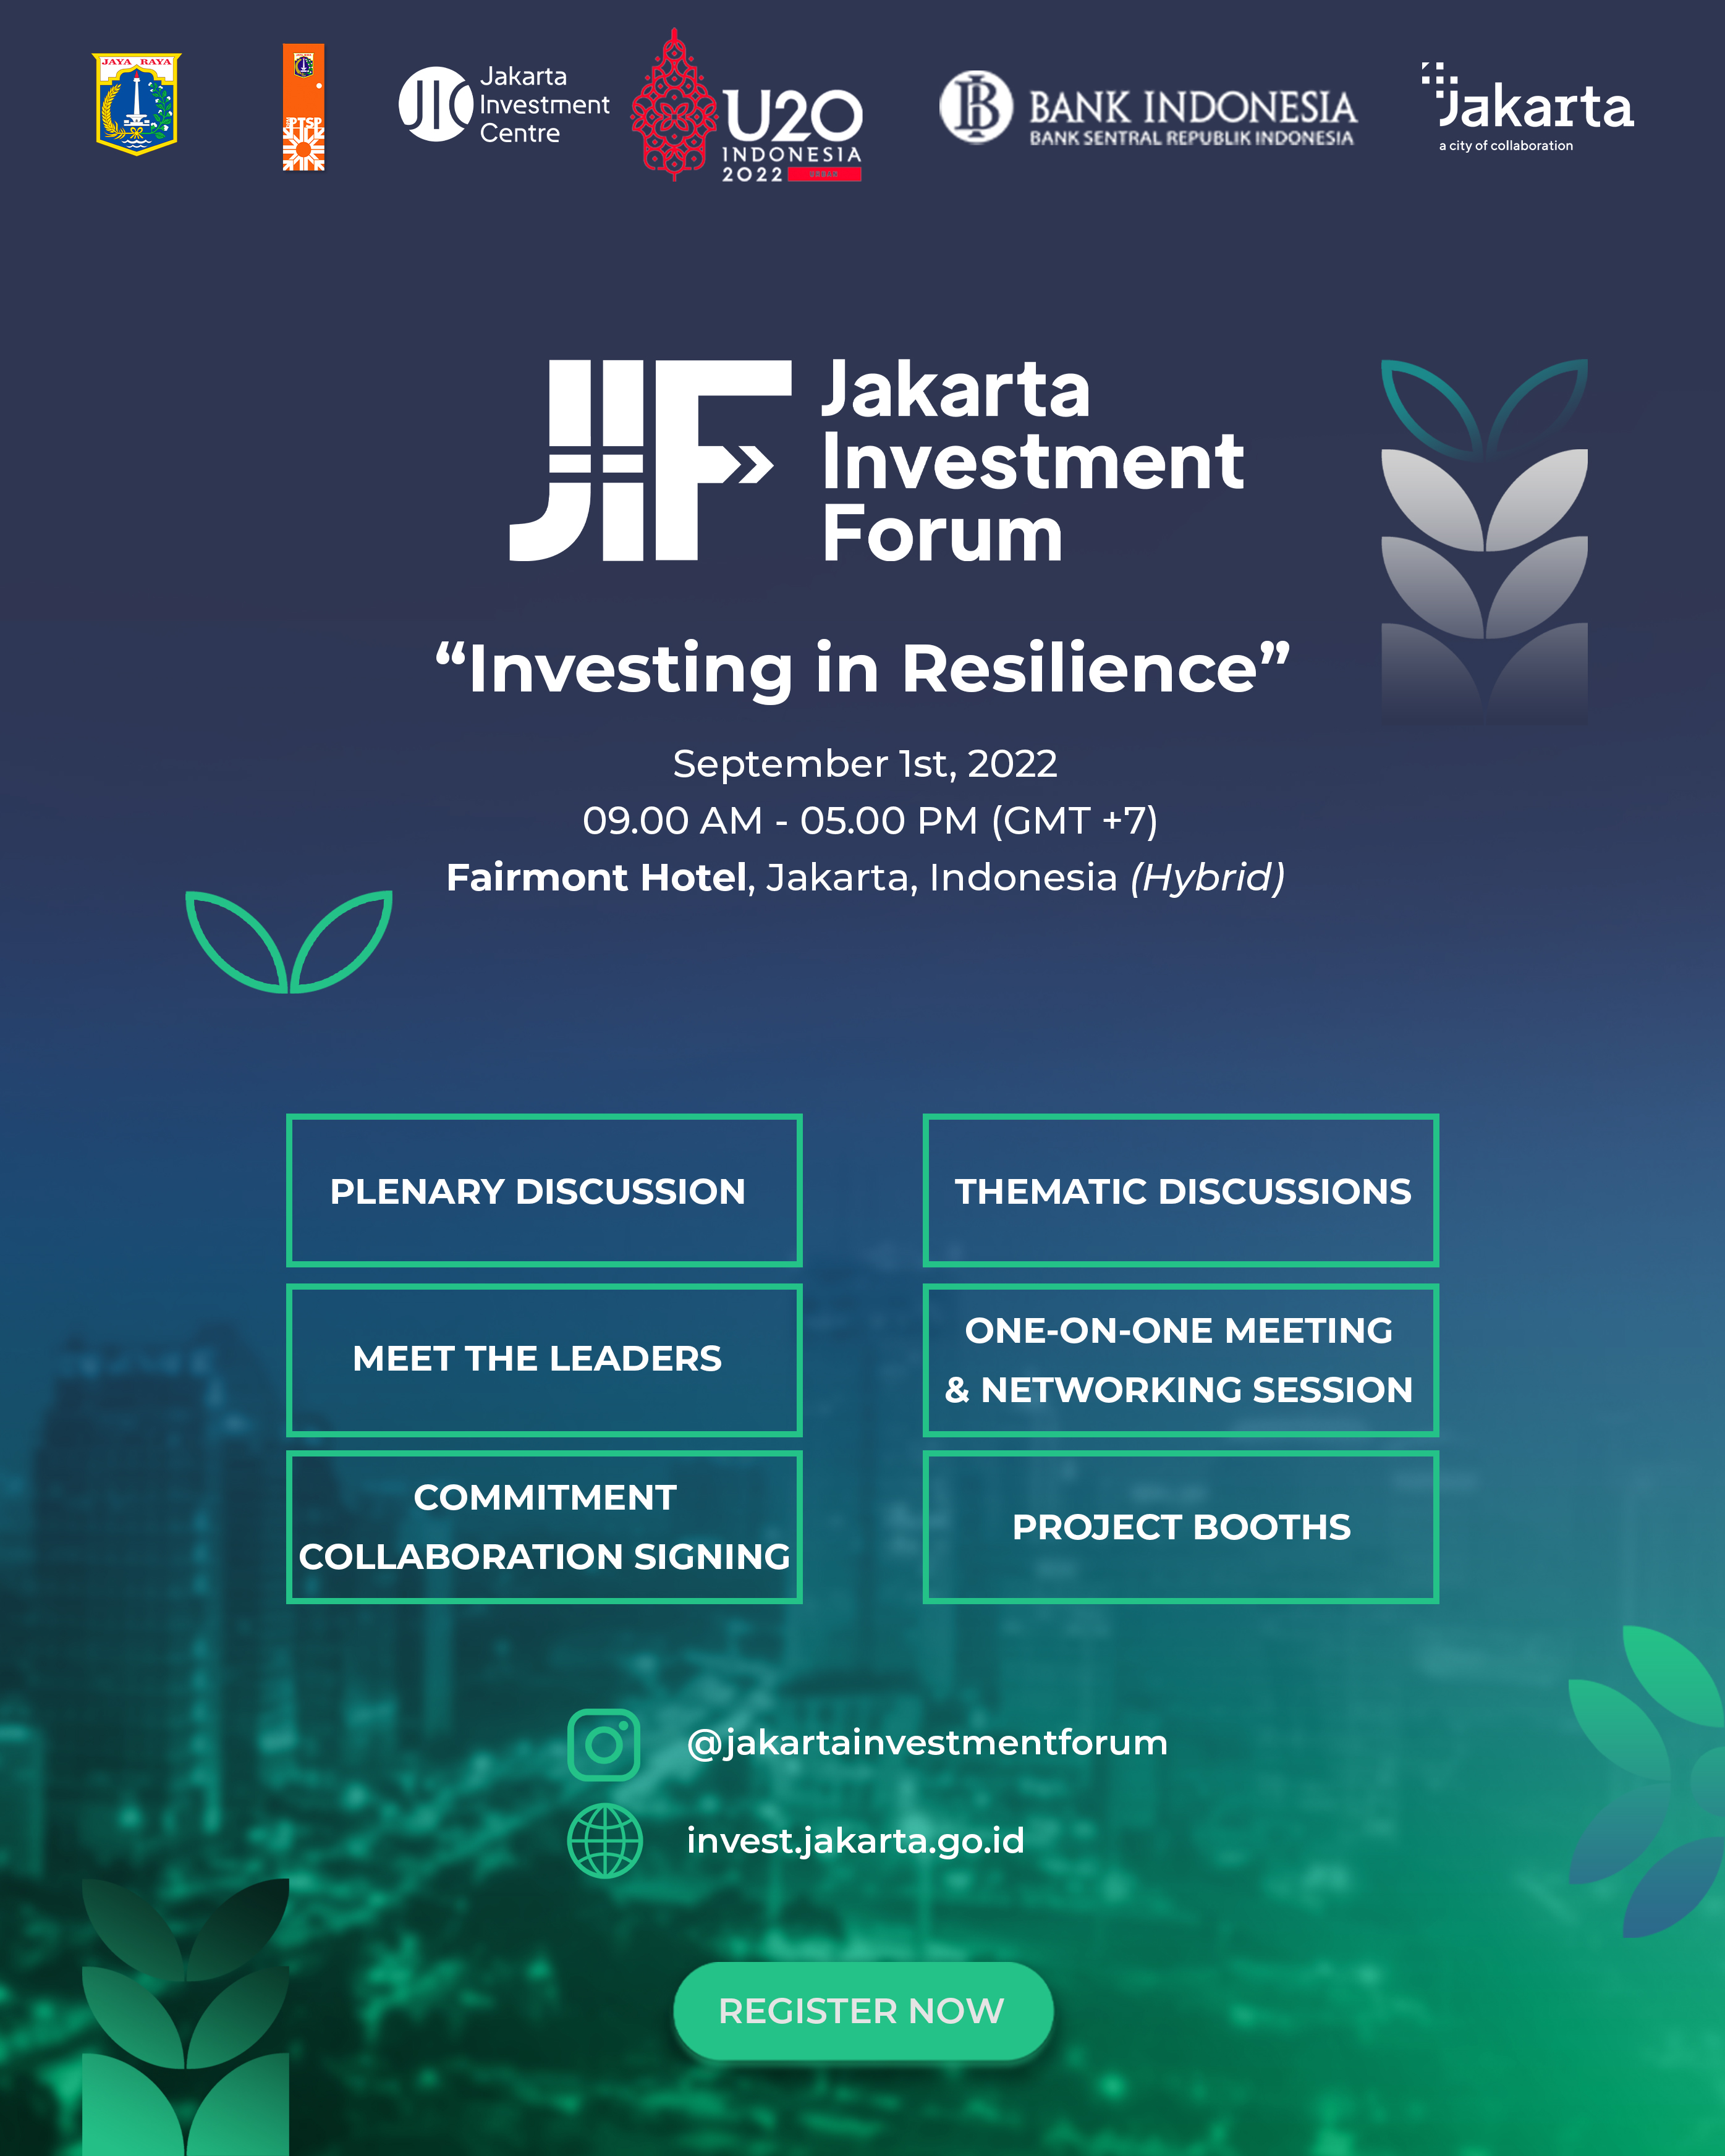 Jakarta Investment Forum 2022